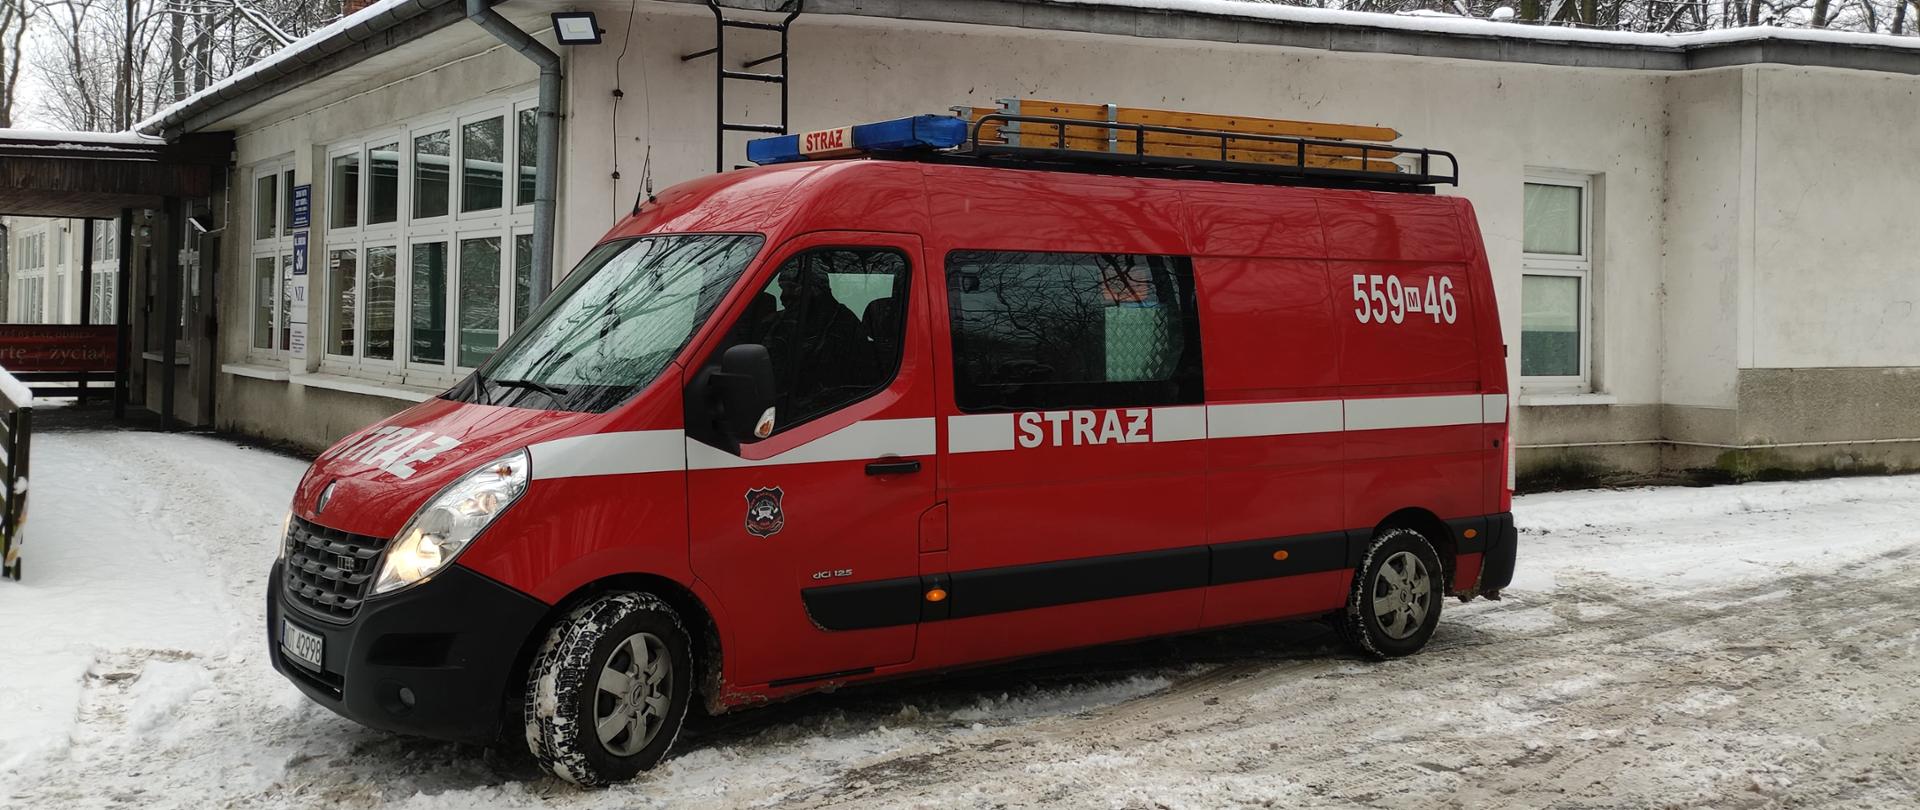 Zdjęcie przedstawia samochód strażacki, którym realizowany jest transport seniorów do punktów szczepień przeciwko COVID 19. W tle znajduję się przychodnia